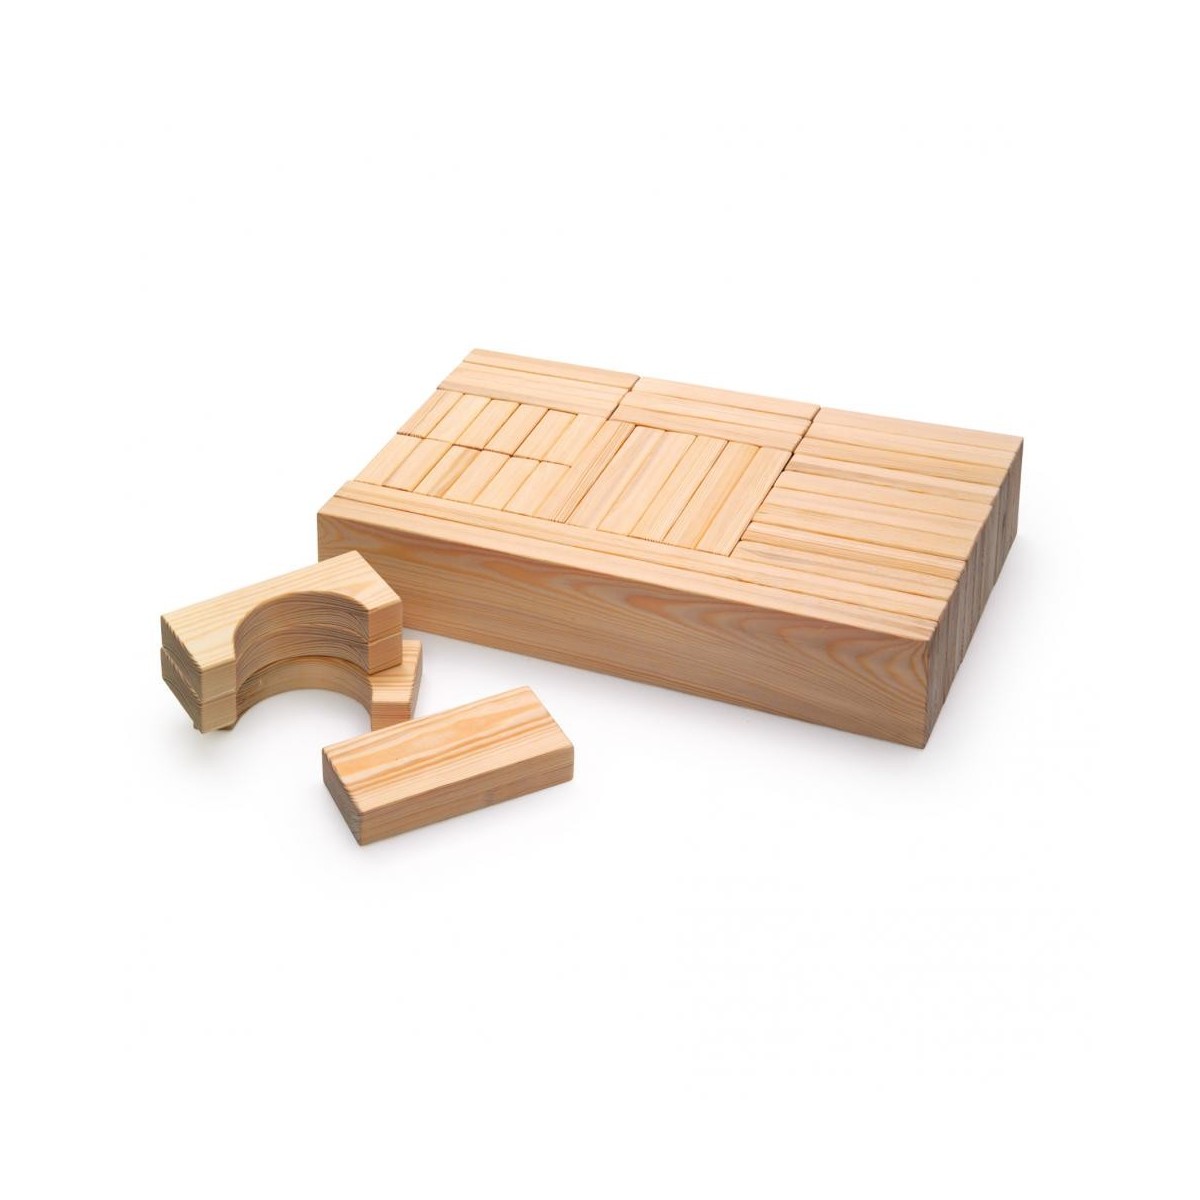 Maxi blocs en bois - 3